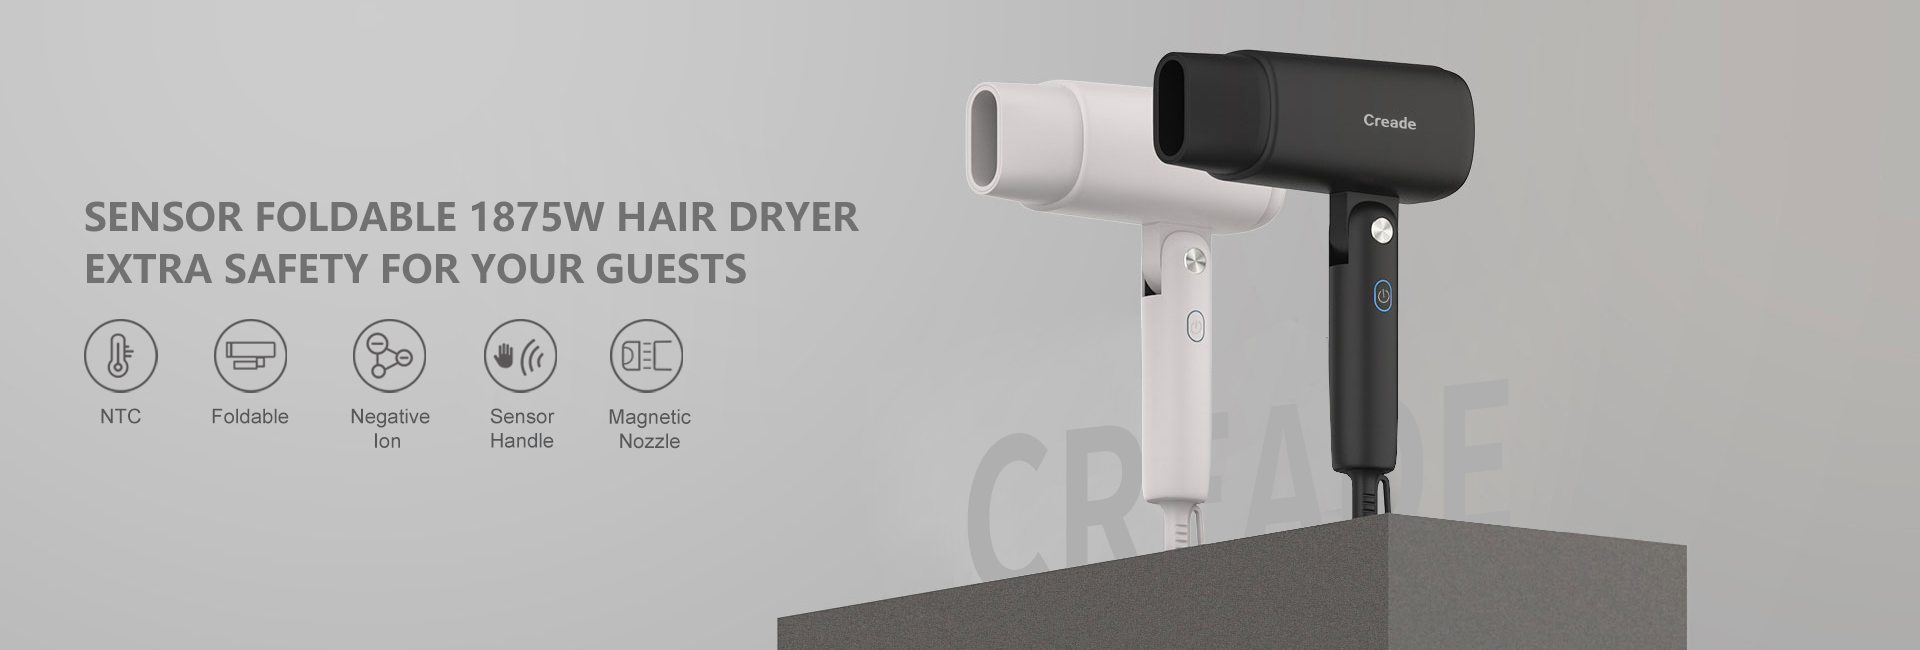 BW616 Sensor Foldable Hair Dryer